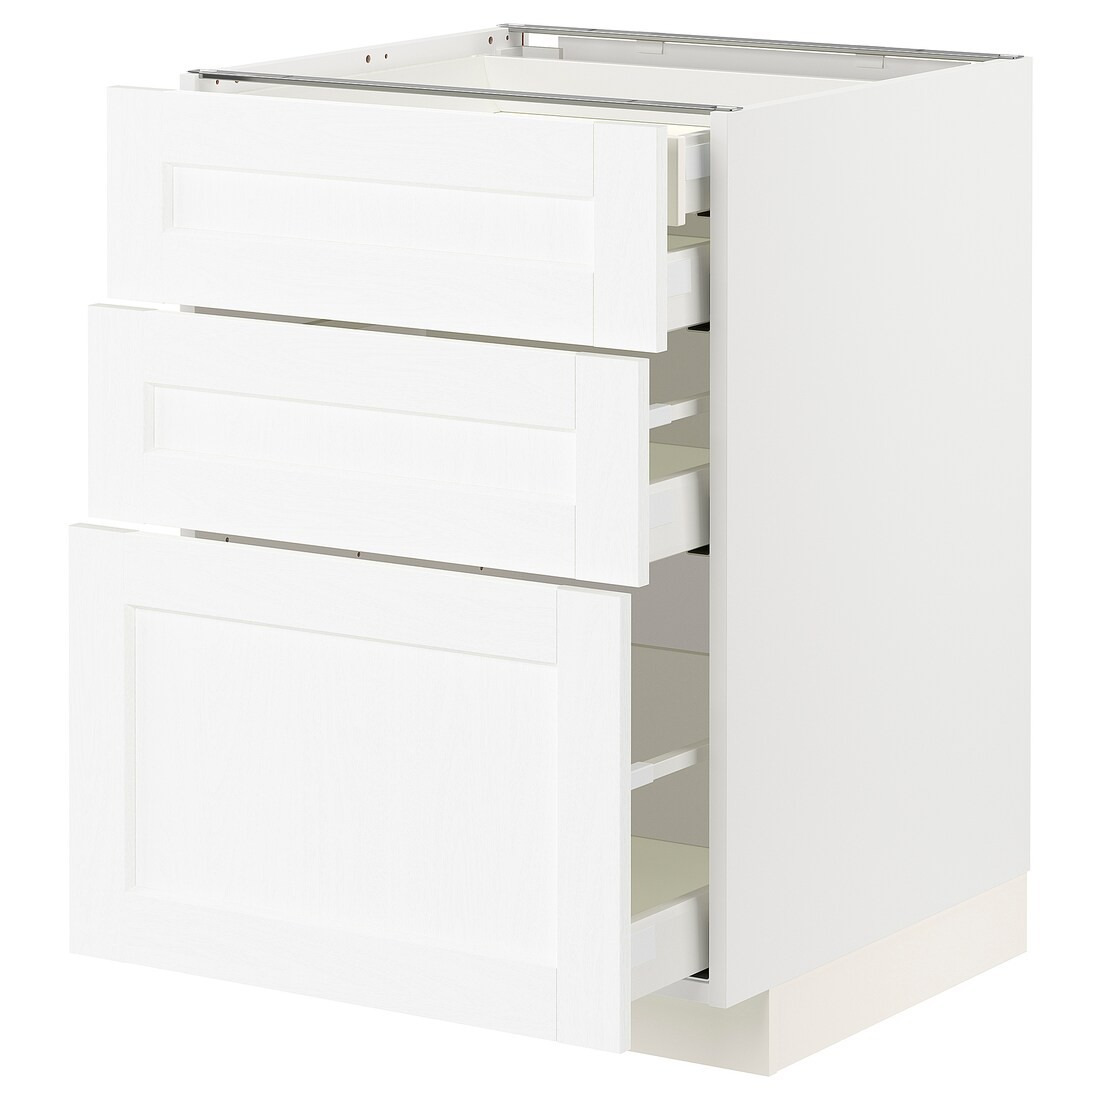 IKEA METOD МЕТОД / MAXIMERA МАКСИМЕРА Напольный шкаф с ящиками, белый Enköping / белый имитация дерева, 60x60 см 69473389 694.733.89